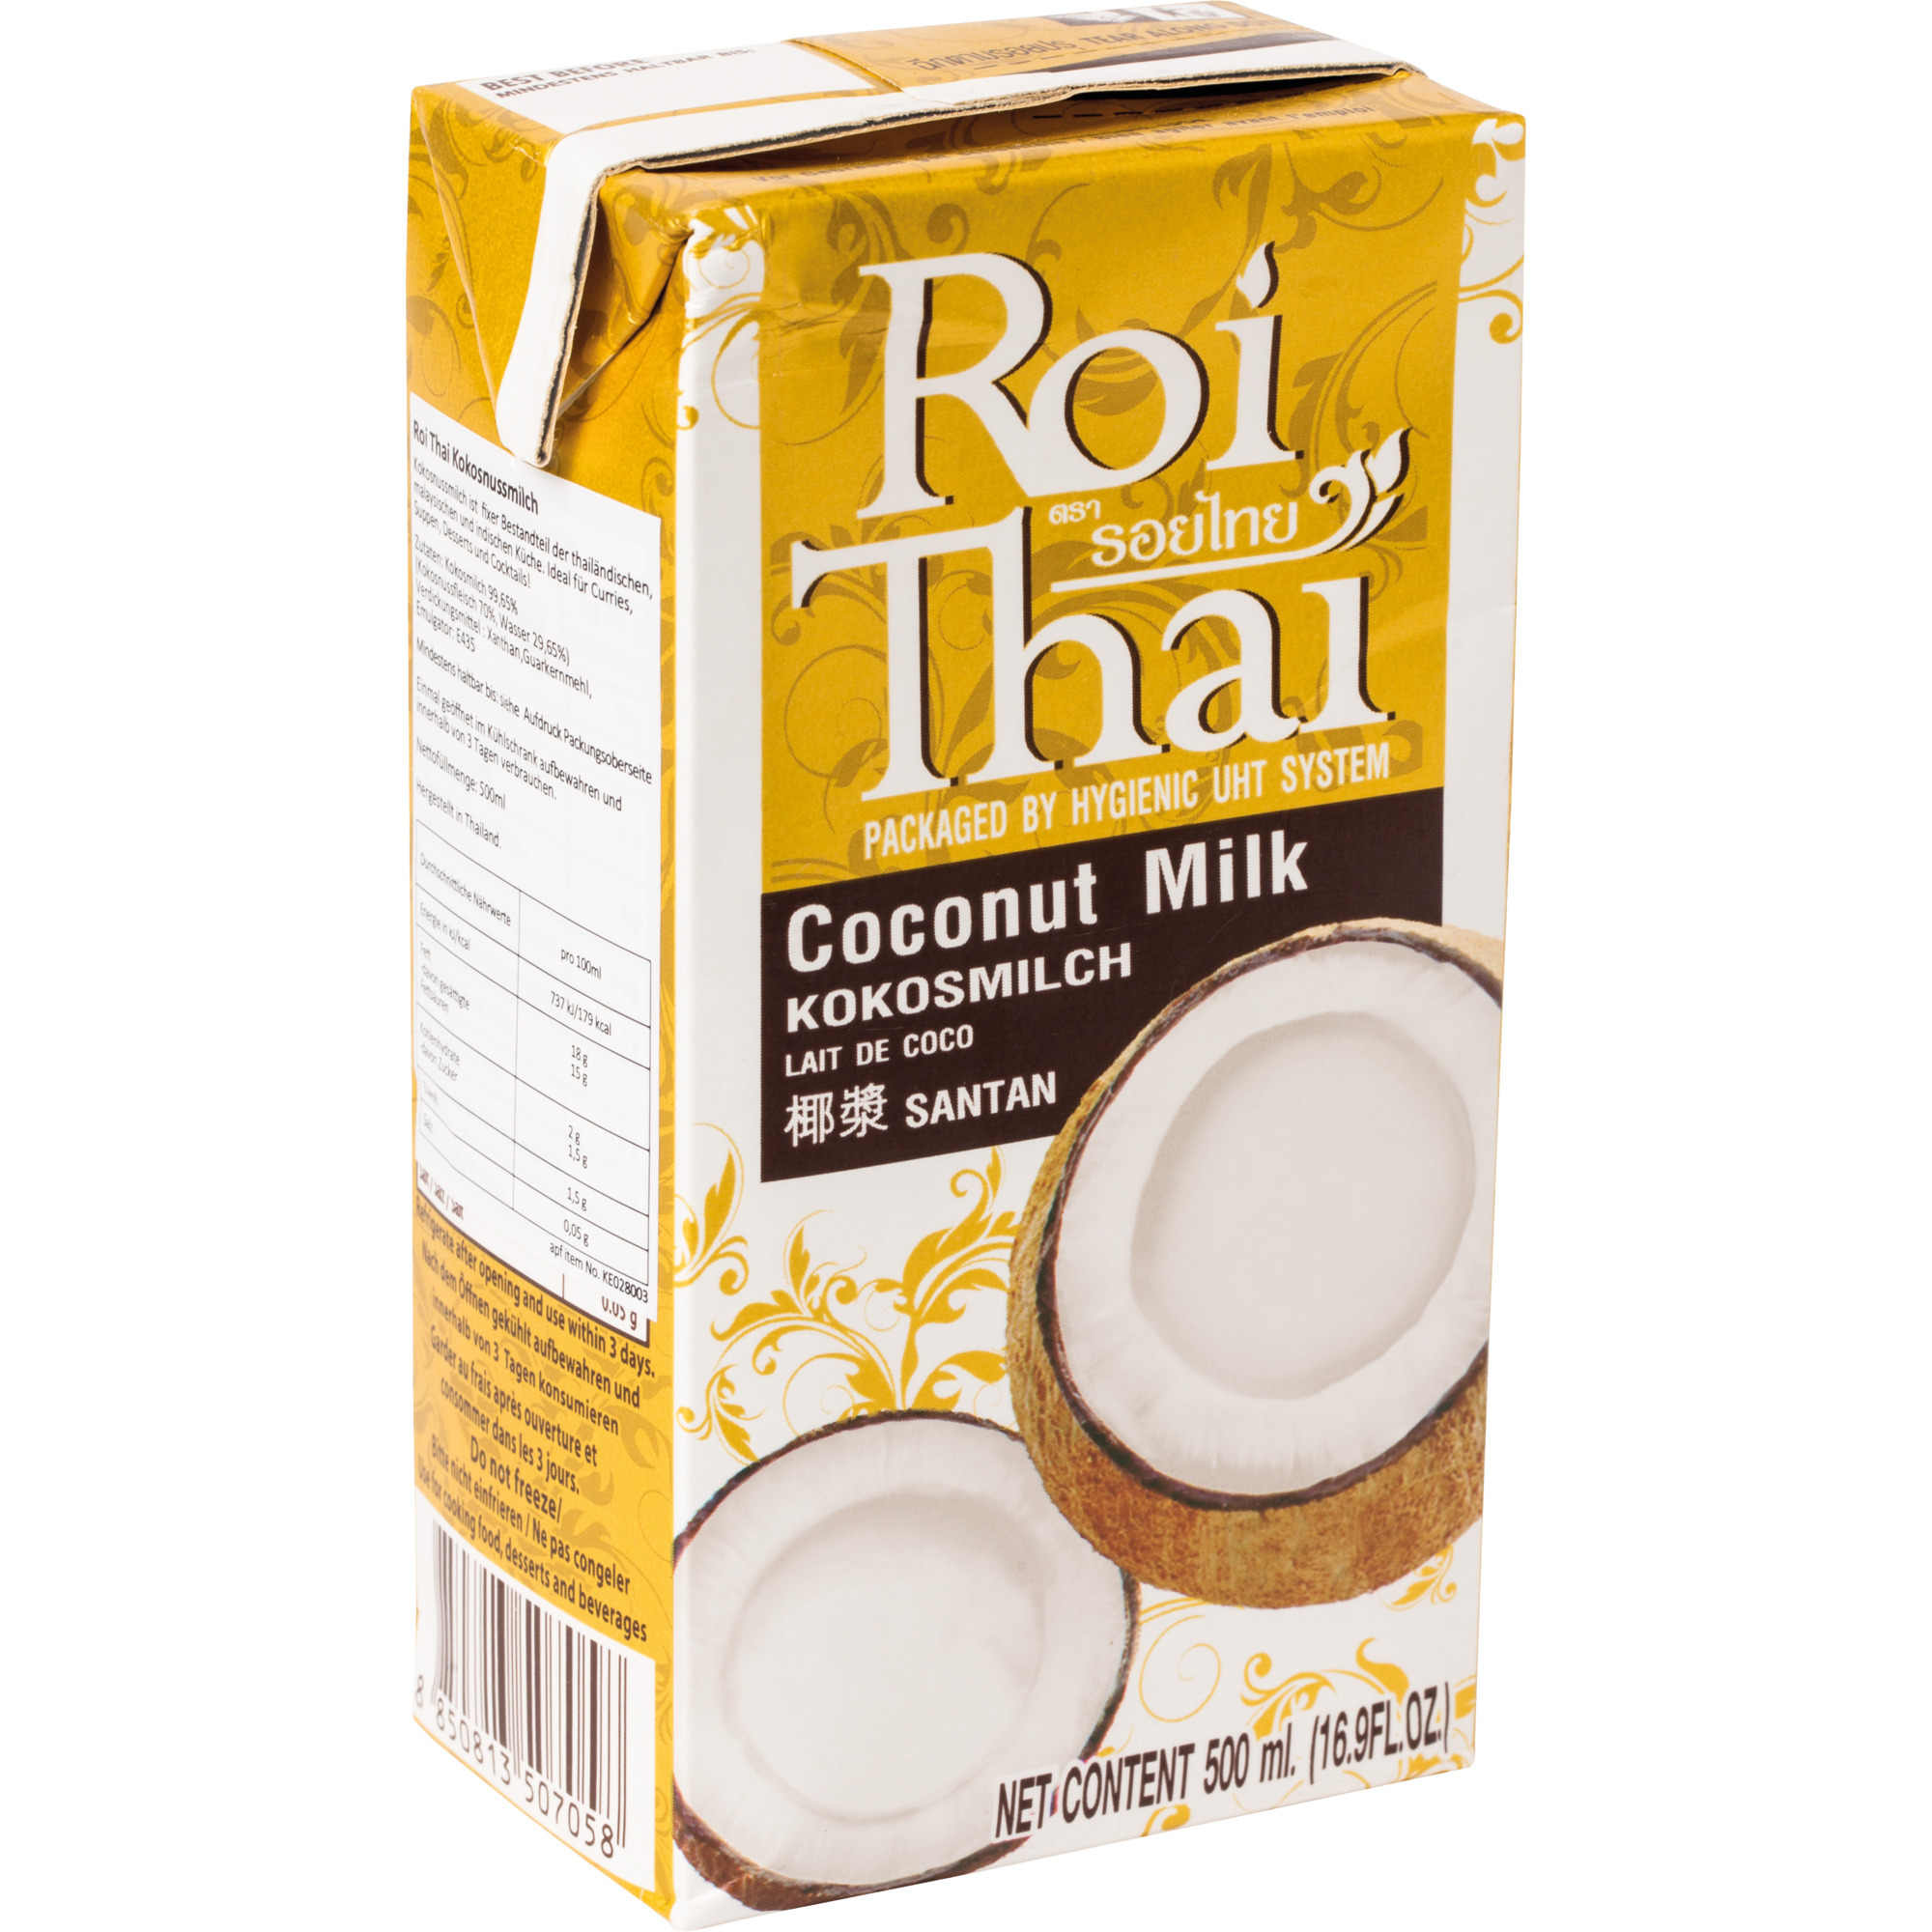 Roi Thai Kokosmilch Tetra 500ml